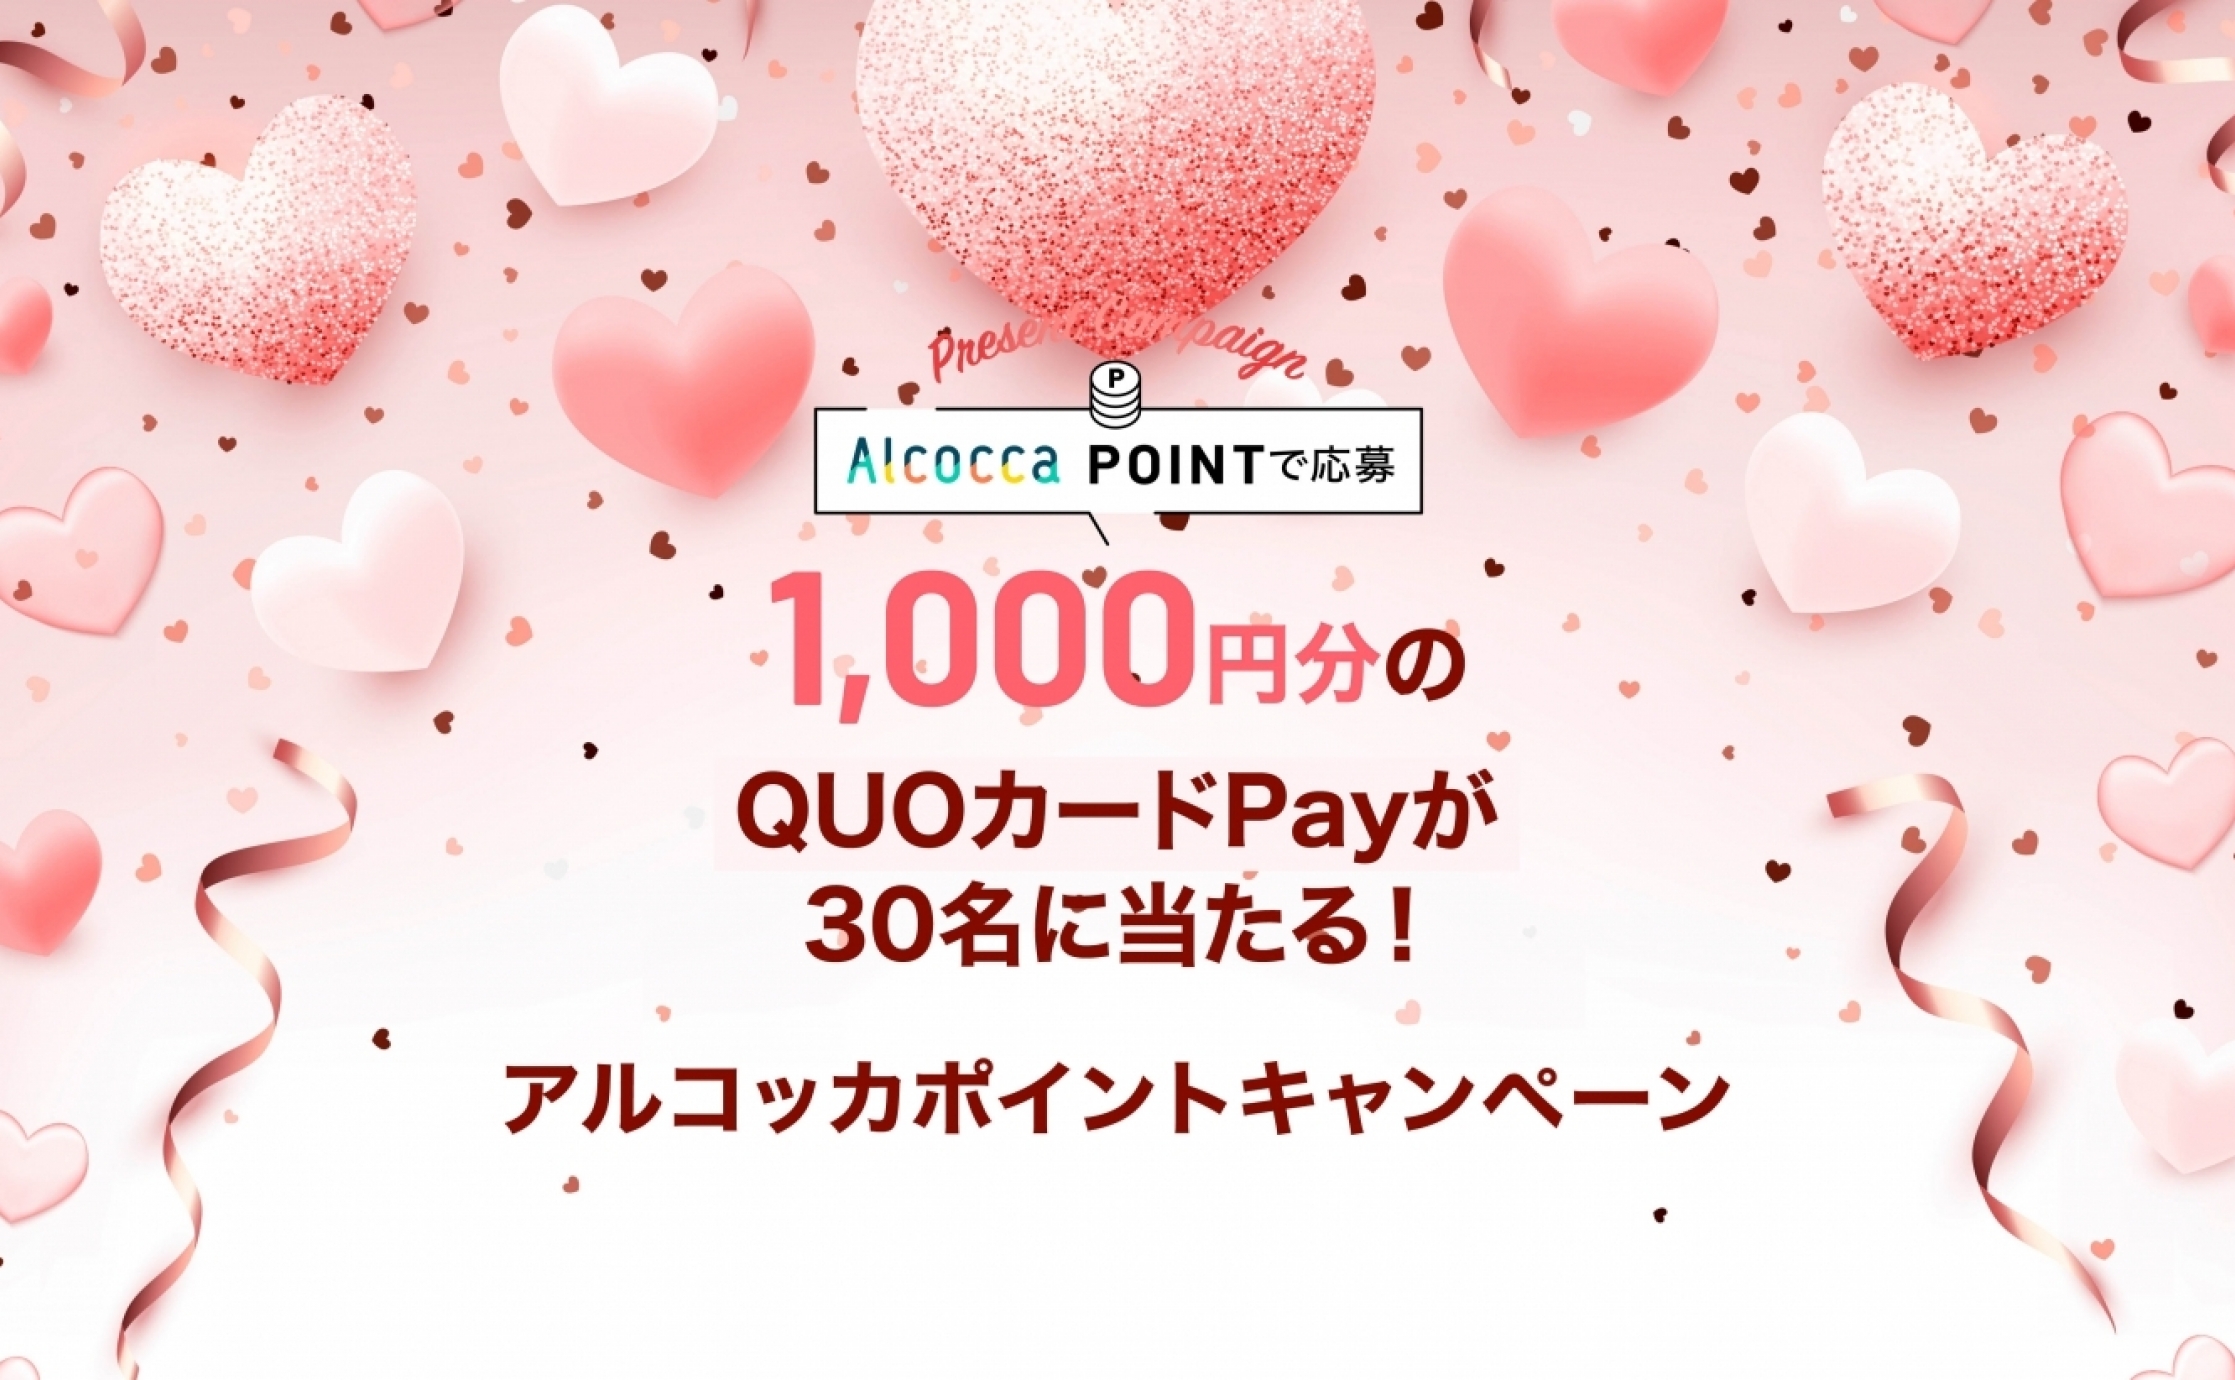 【5月度】1,000円分のQUOカードPayが当たる！アルコッカポイントキャンペーン♪